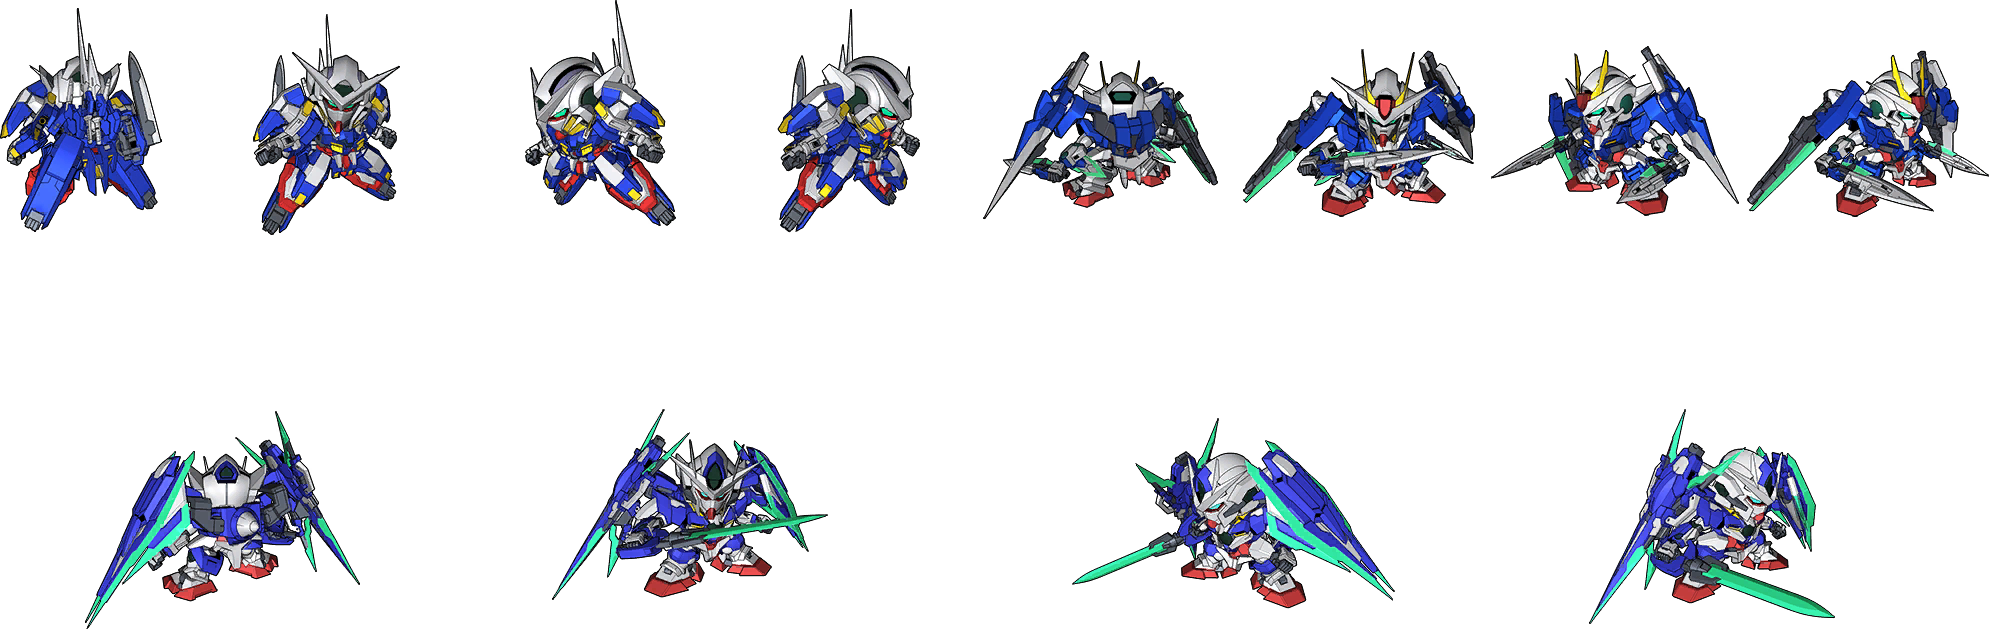 SD Gundam G Generation Cross Rays - 00 Gundam V Senki